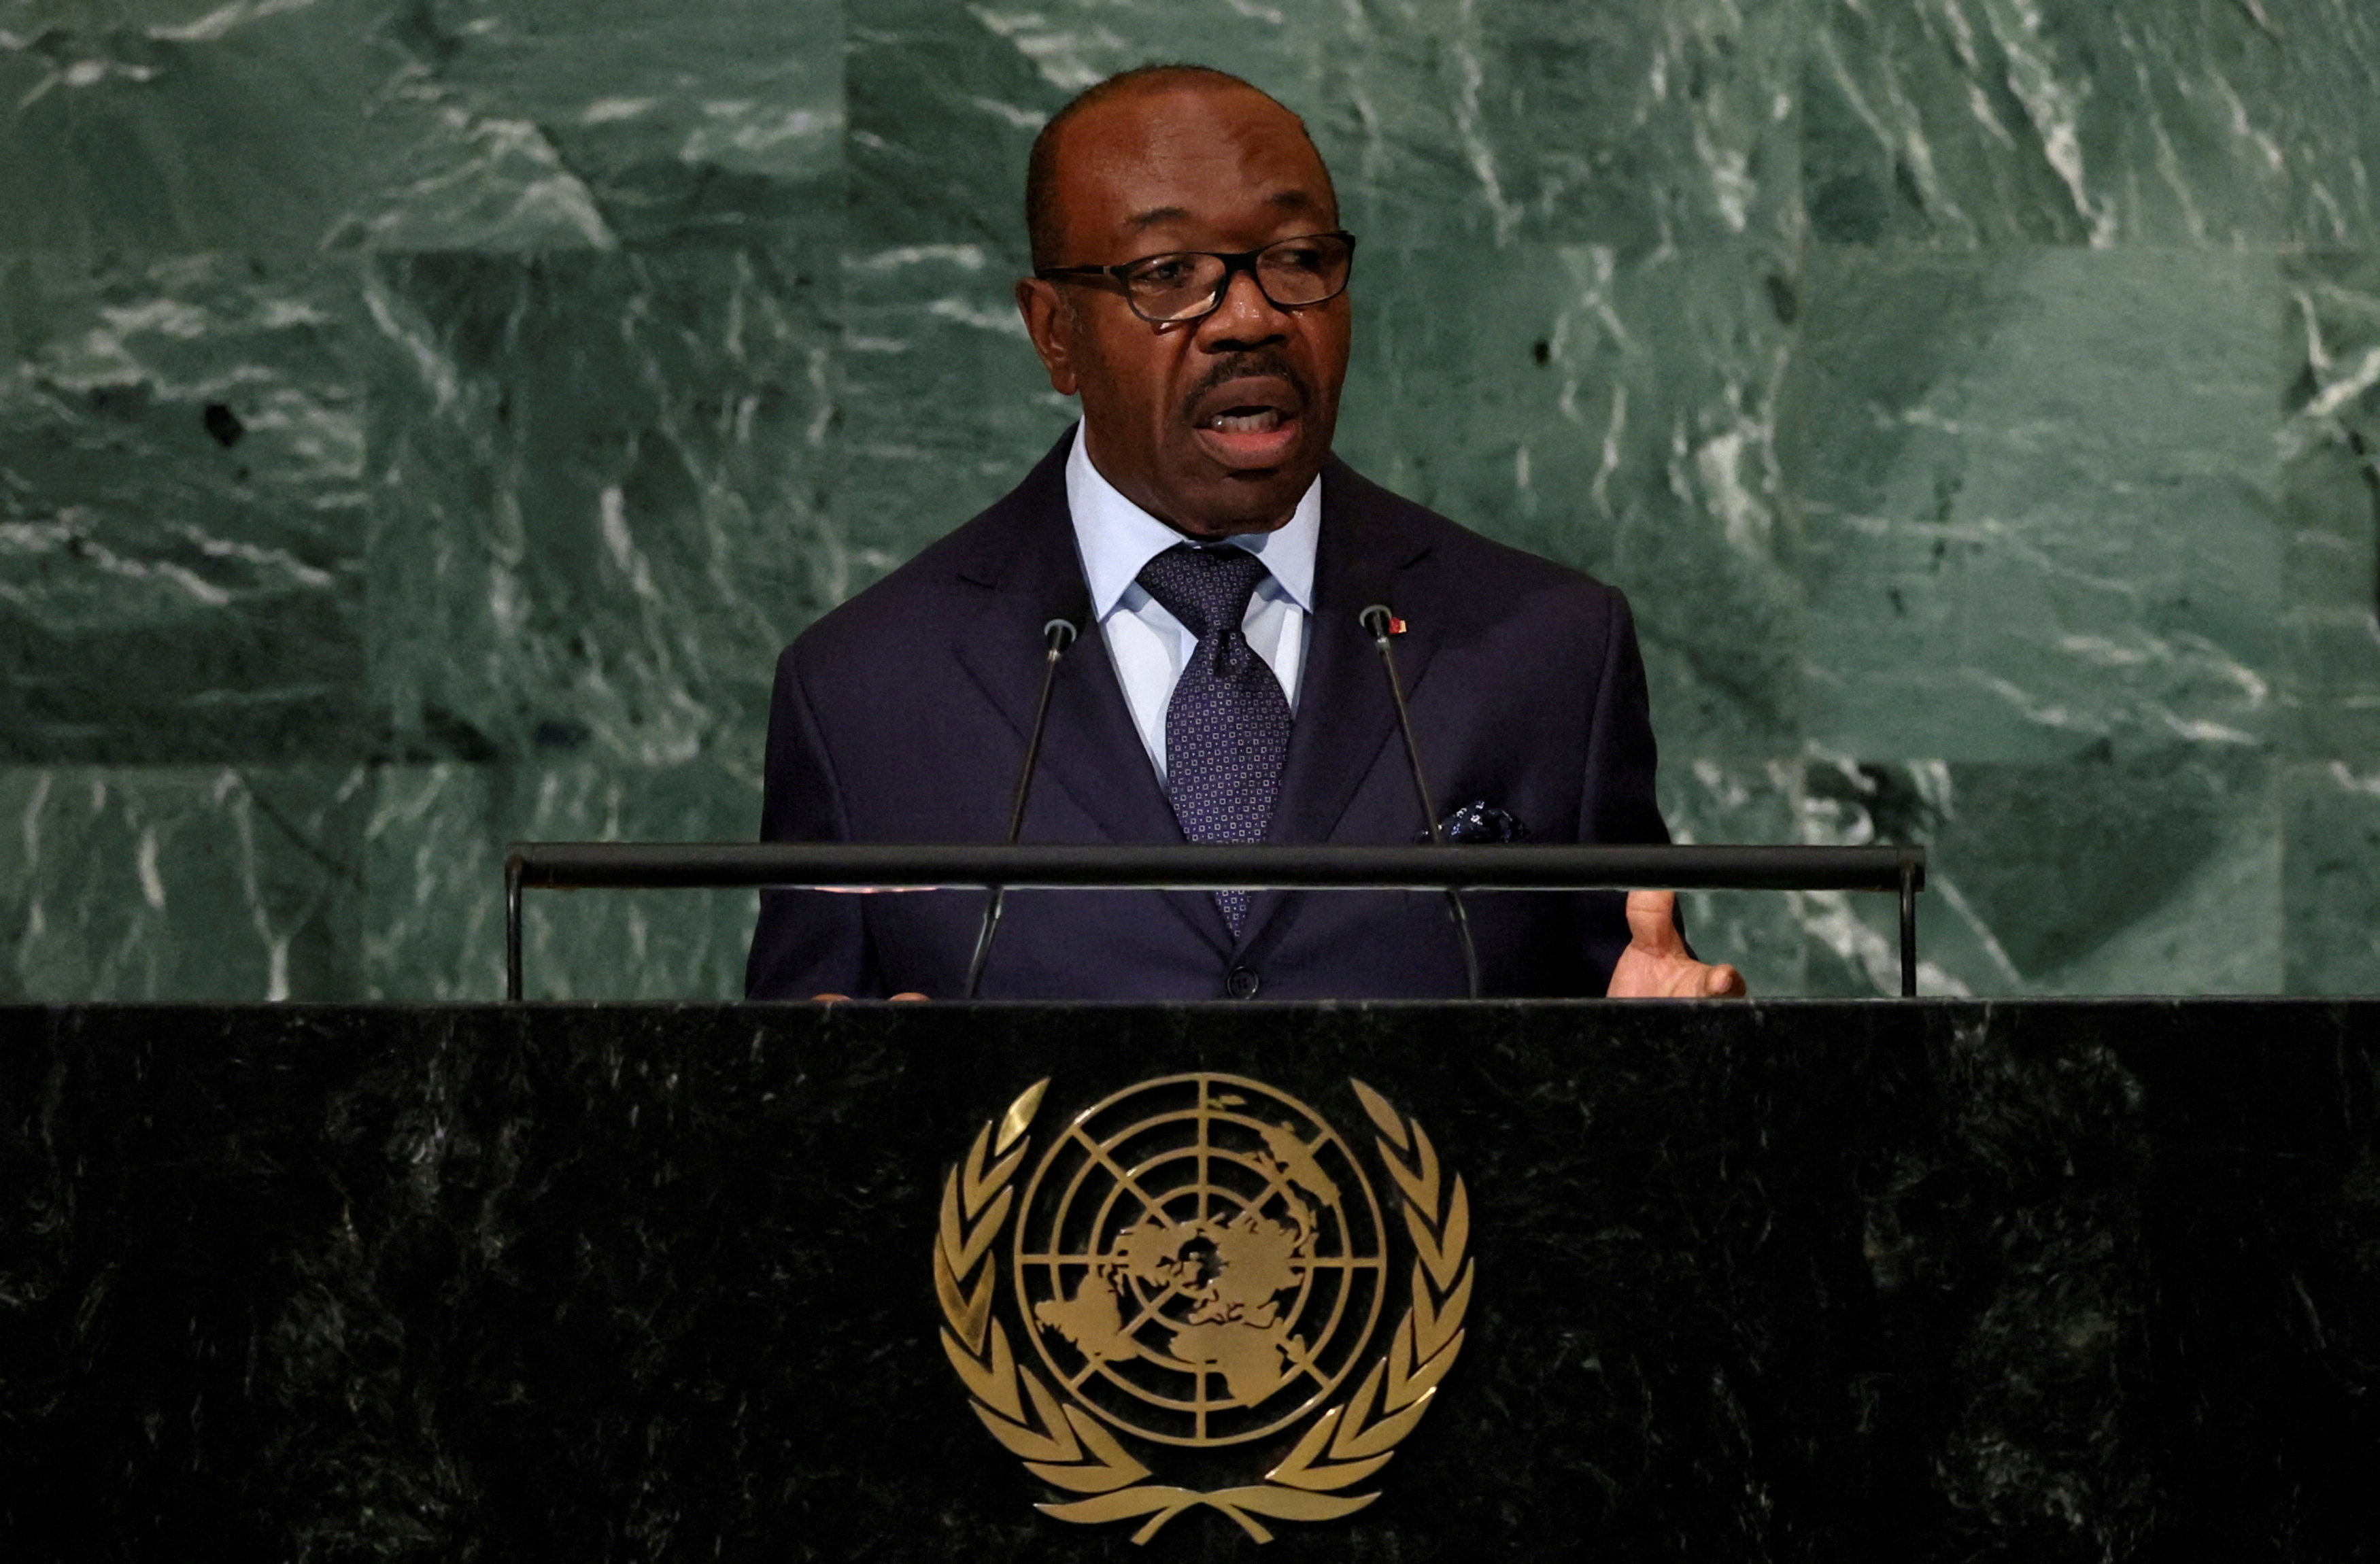 El presidente gabonés Ali Bongo gana su tercer mandato tras unas elecciones controvertidas